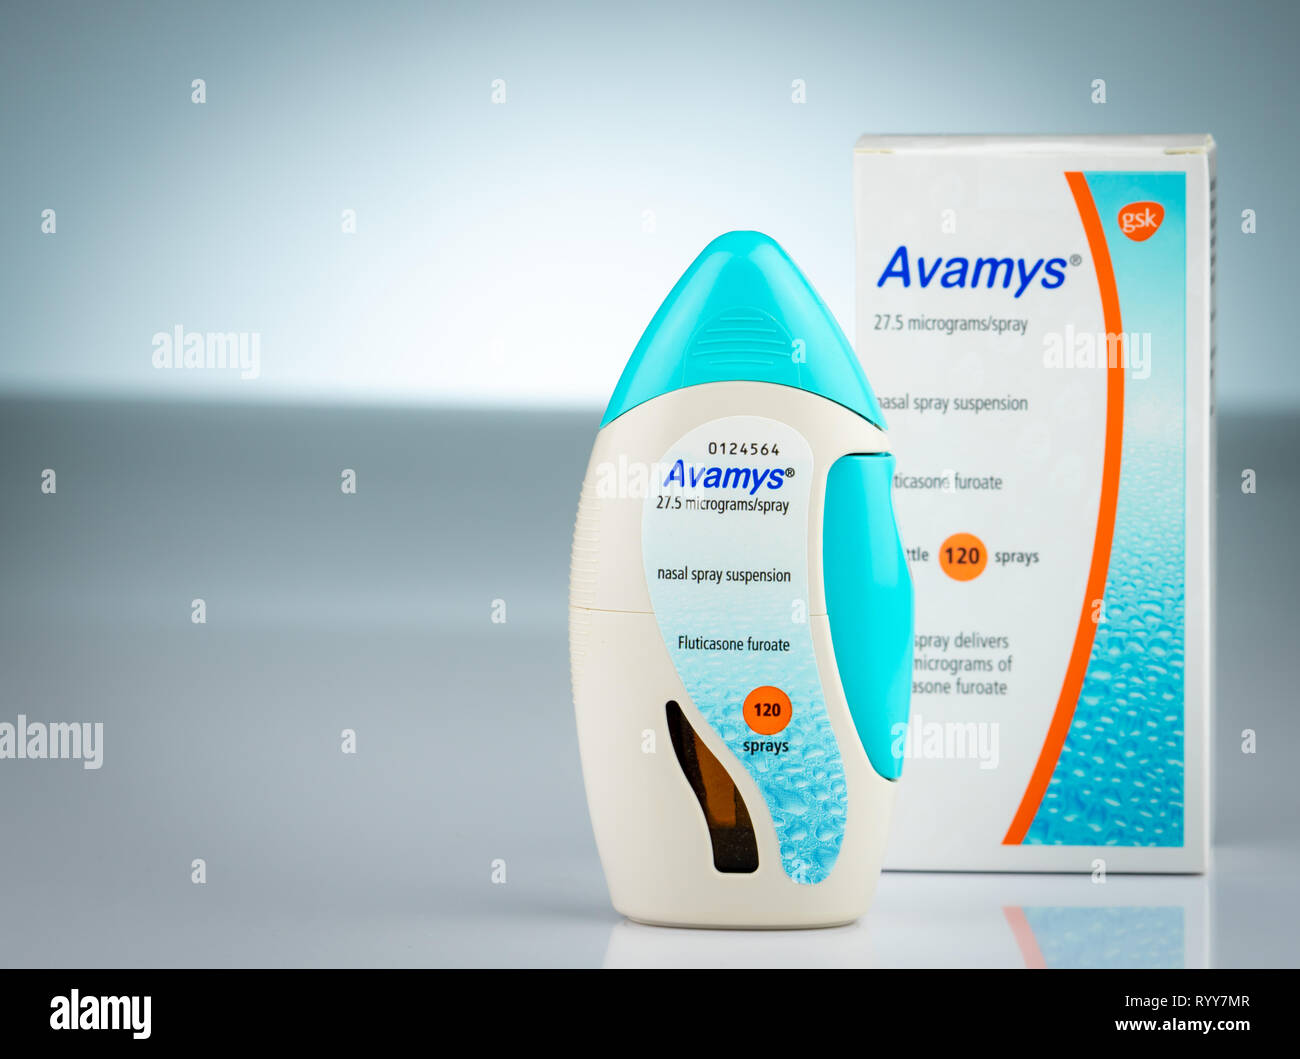 Avamys Banque de photographies et d'images à haute résolution - Alamy